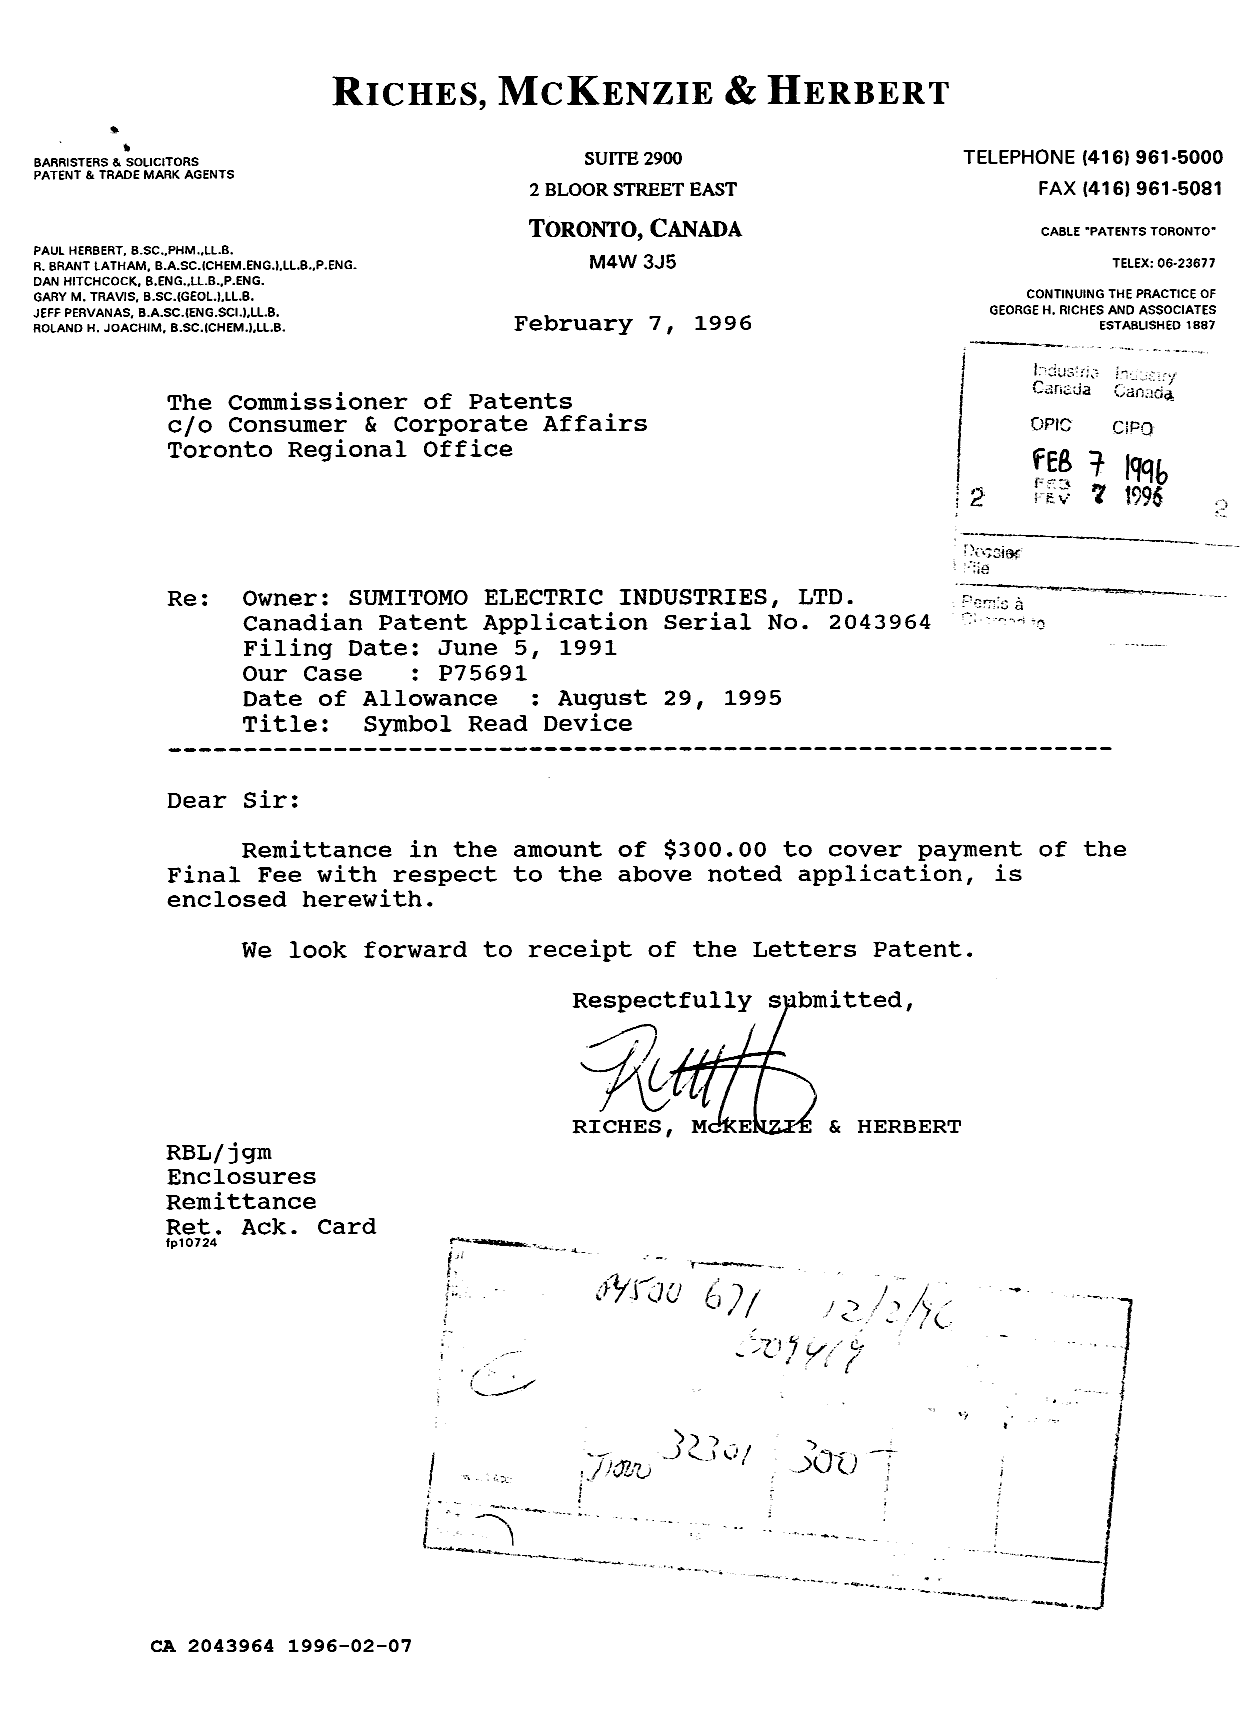 Document de brevet canadien 2043964. Correspondance reliée au PCT 19960207. Image 1 de 1